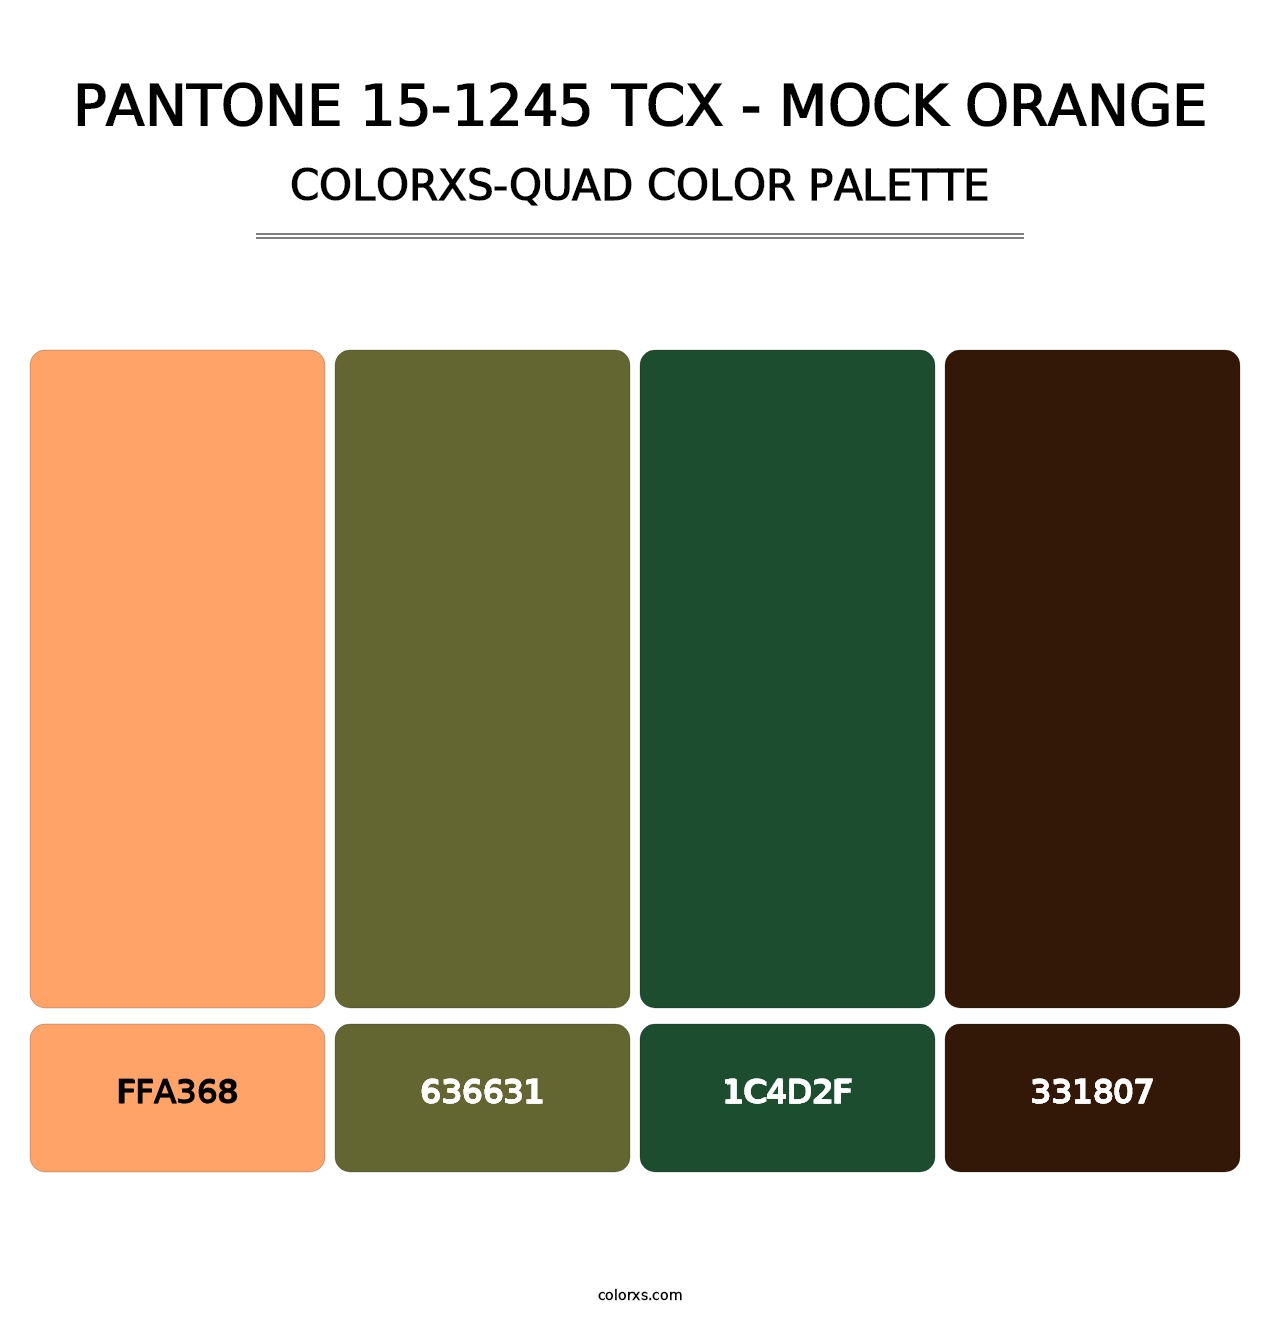 PANTONE 15-1245 TCX - Mock Orange - Colorxs Quad Palette